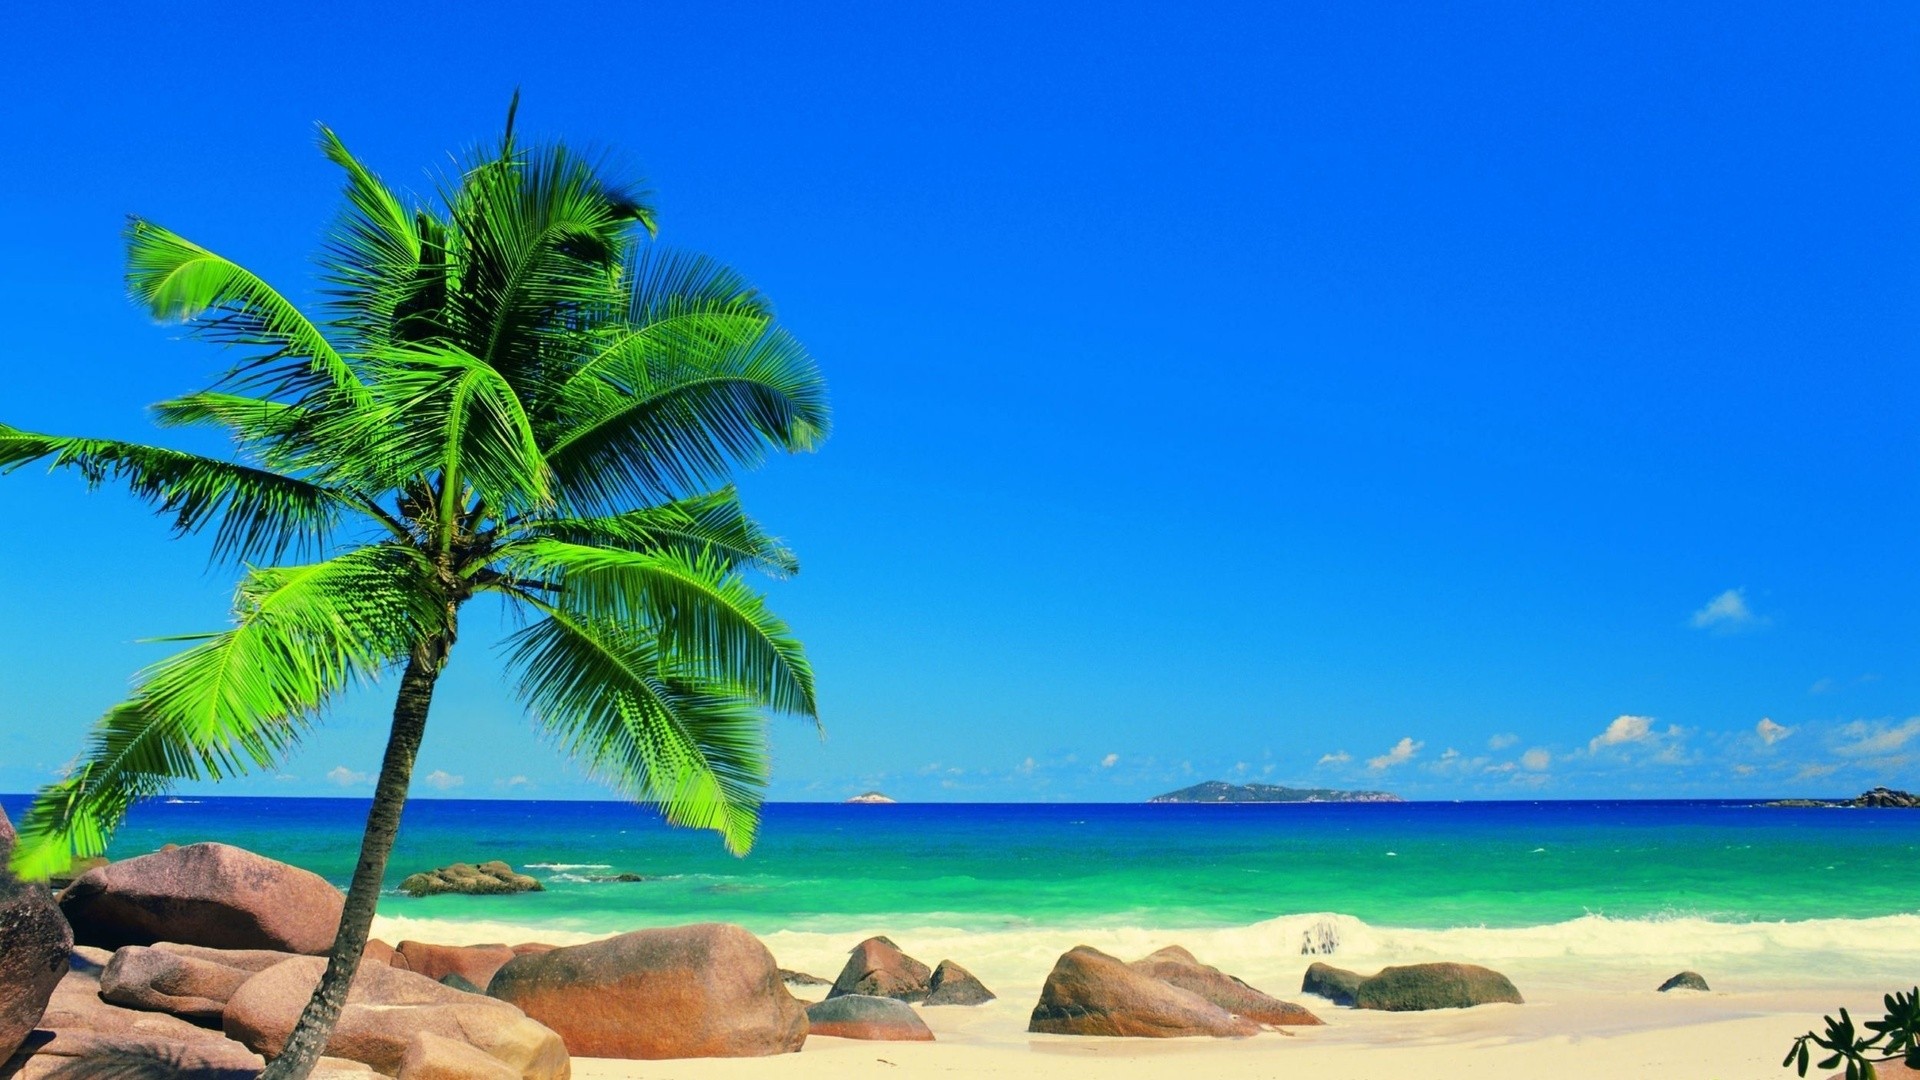 море, пальма, камни, песок, пляж, горизонт, голубое небо, лето, берег